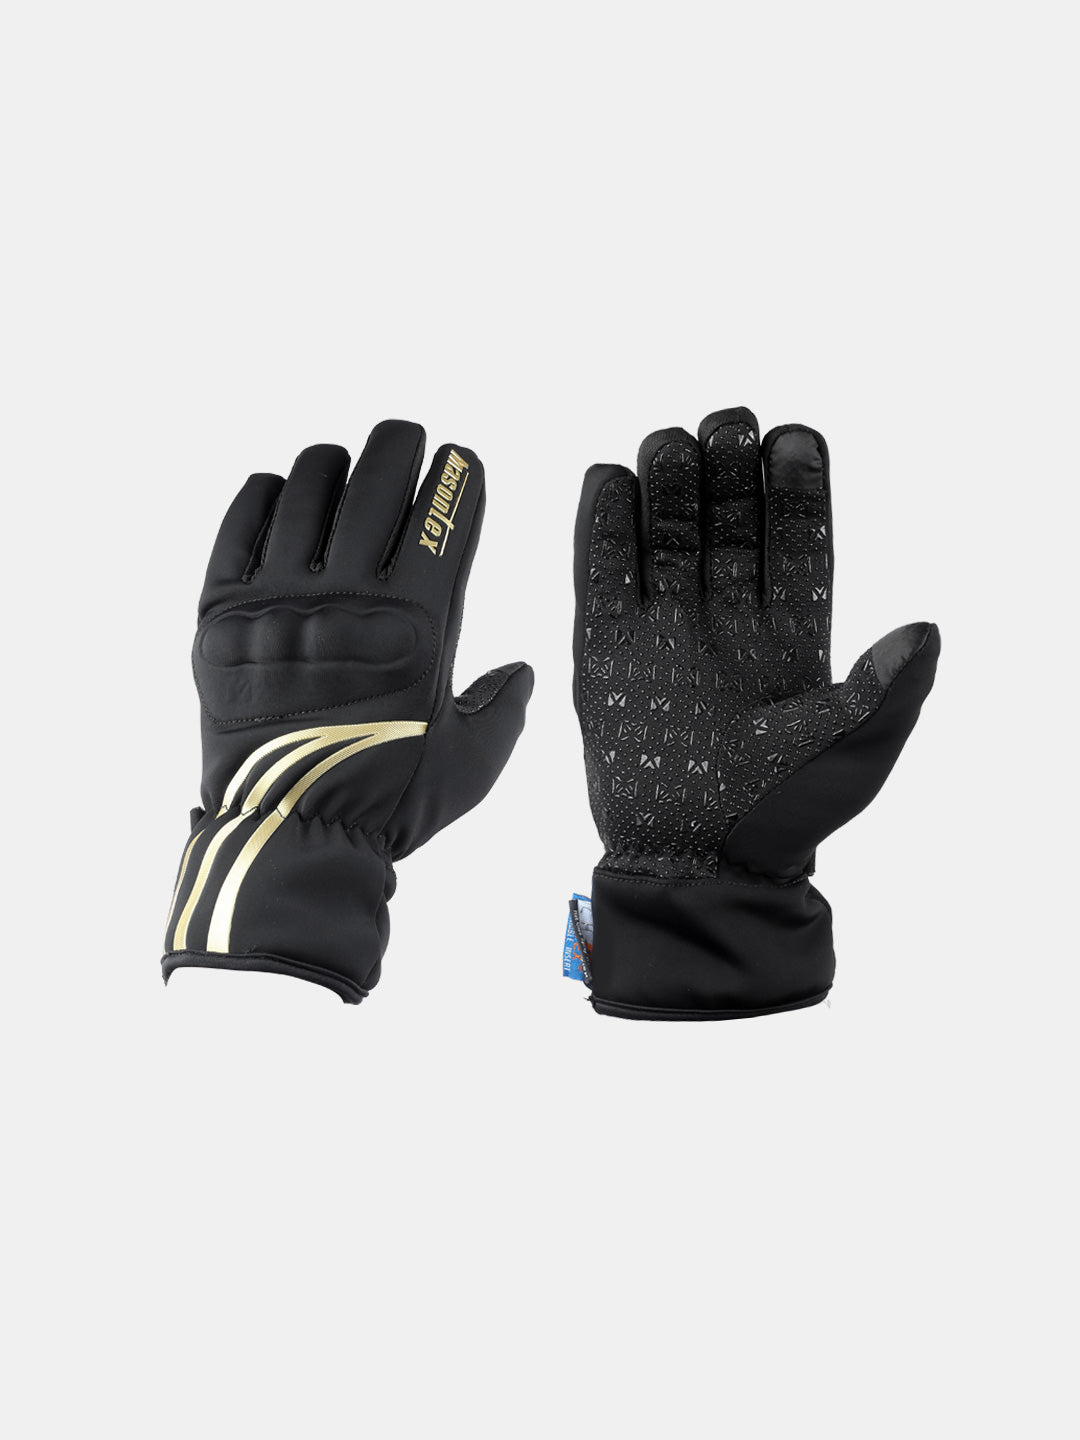 Masontex Gloves F29 Golden